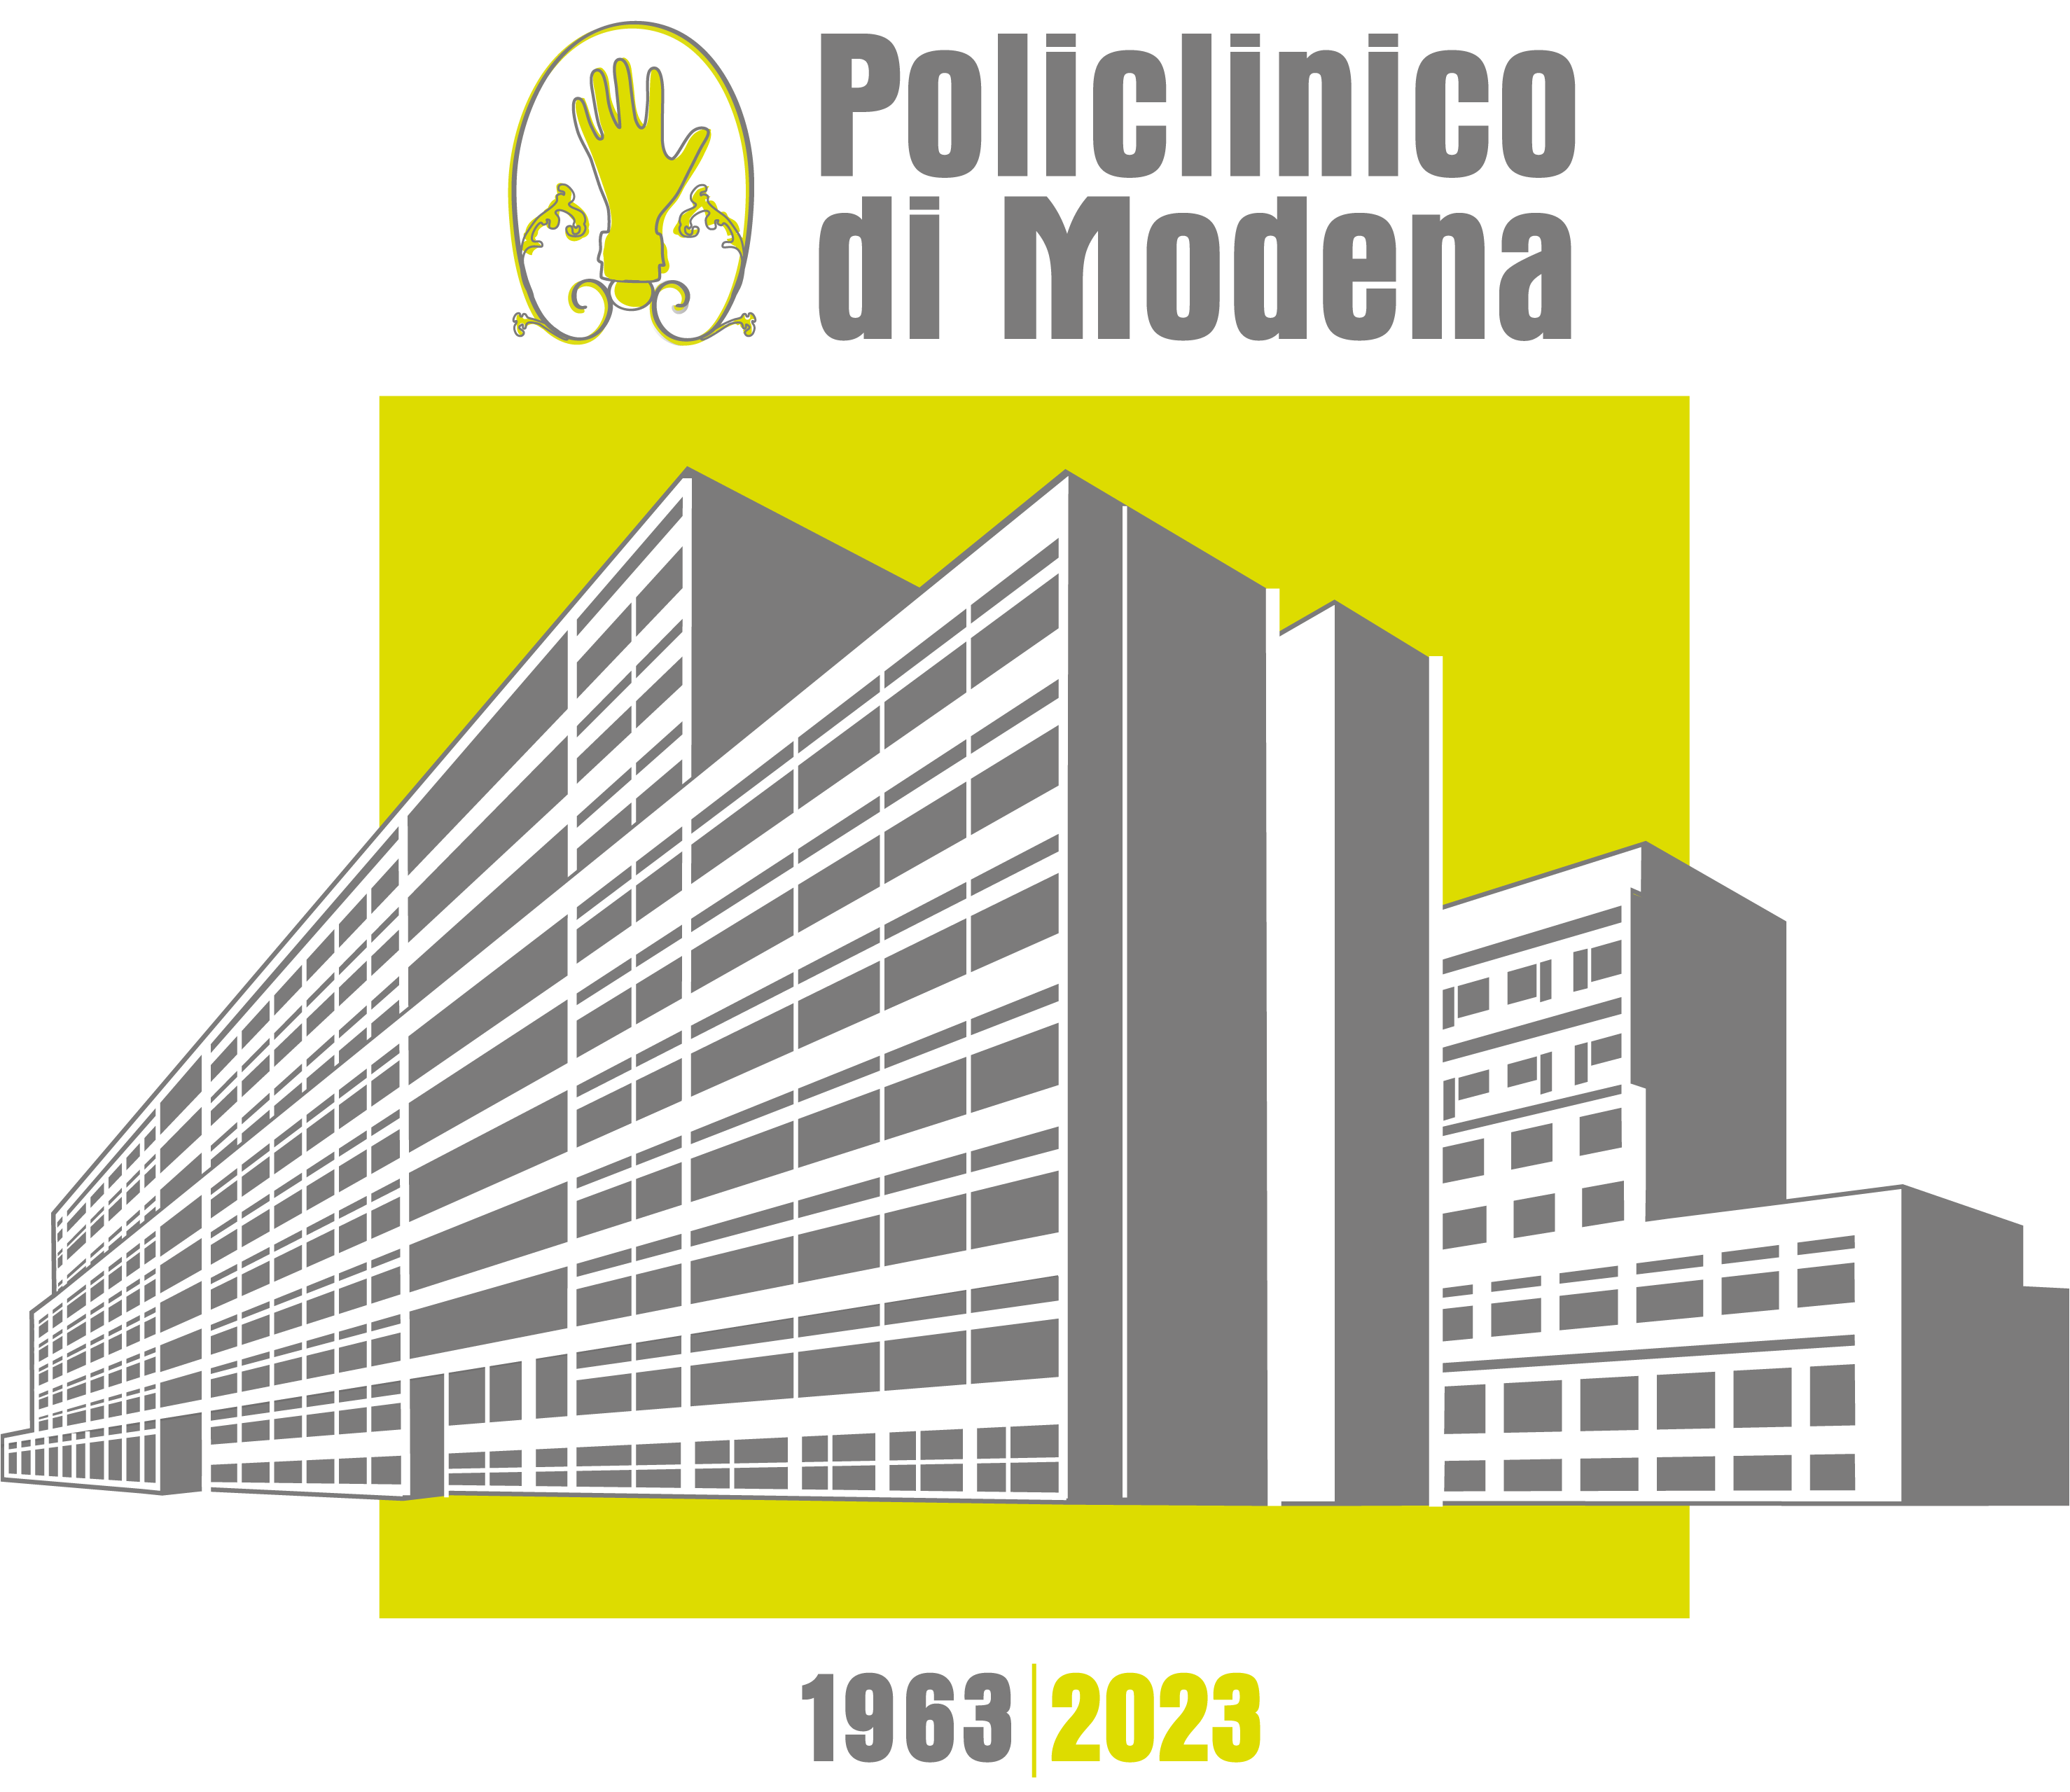 Policlinico di Modena, Sessant’anni nel cuore della sanità modenese